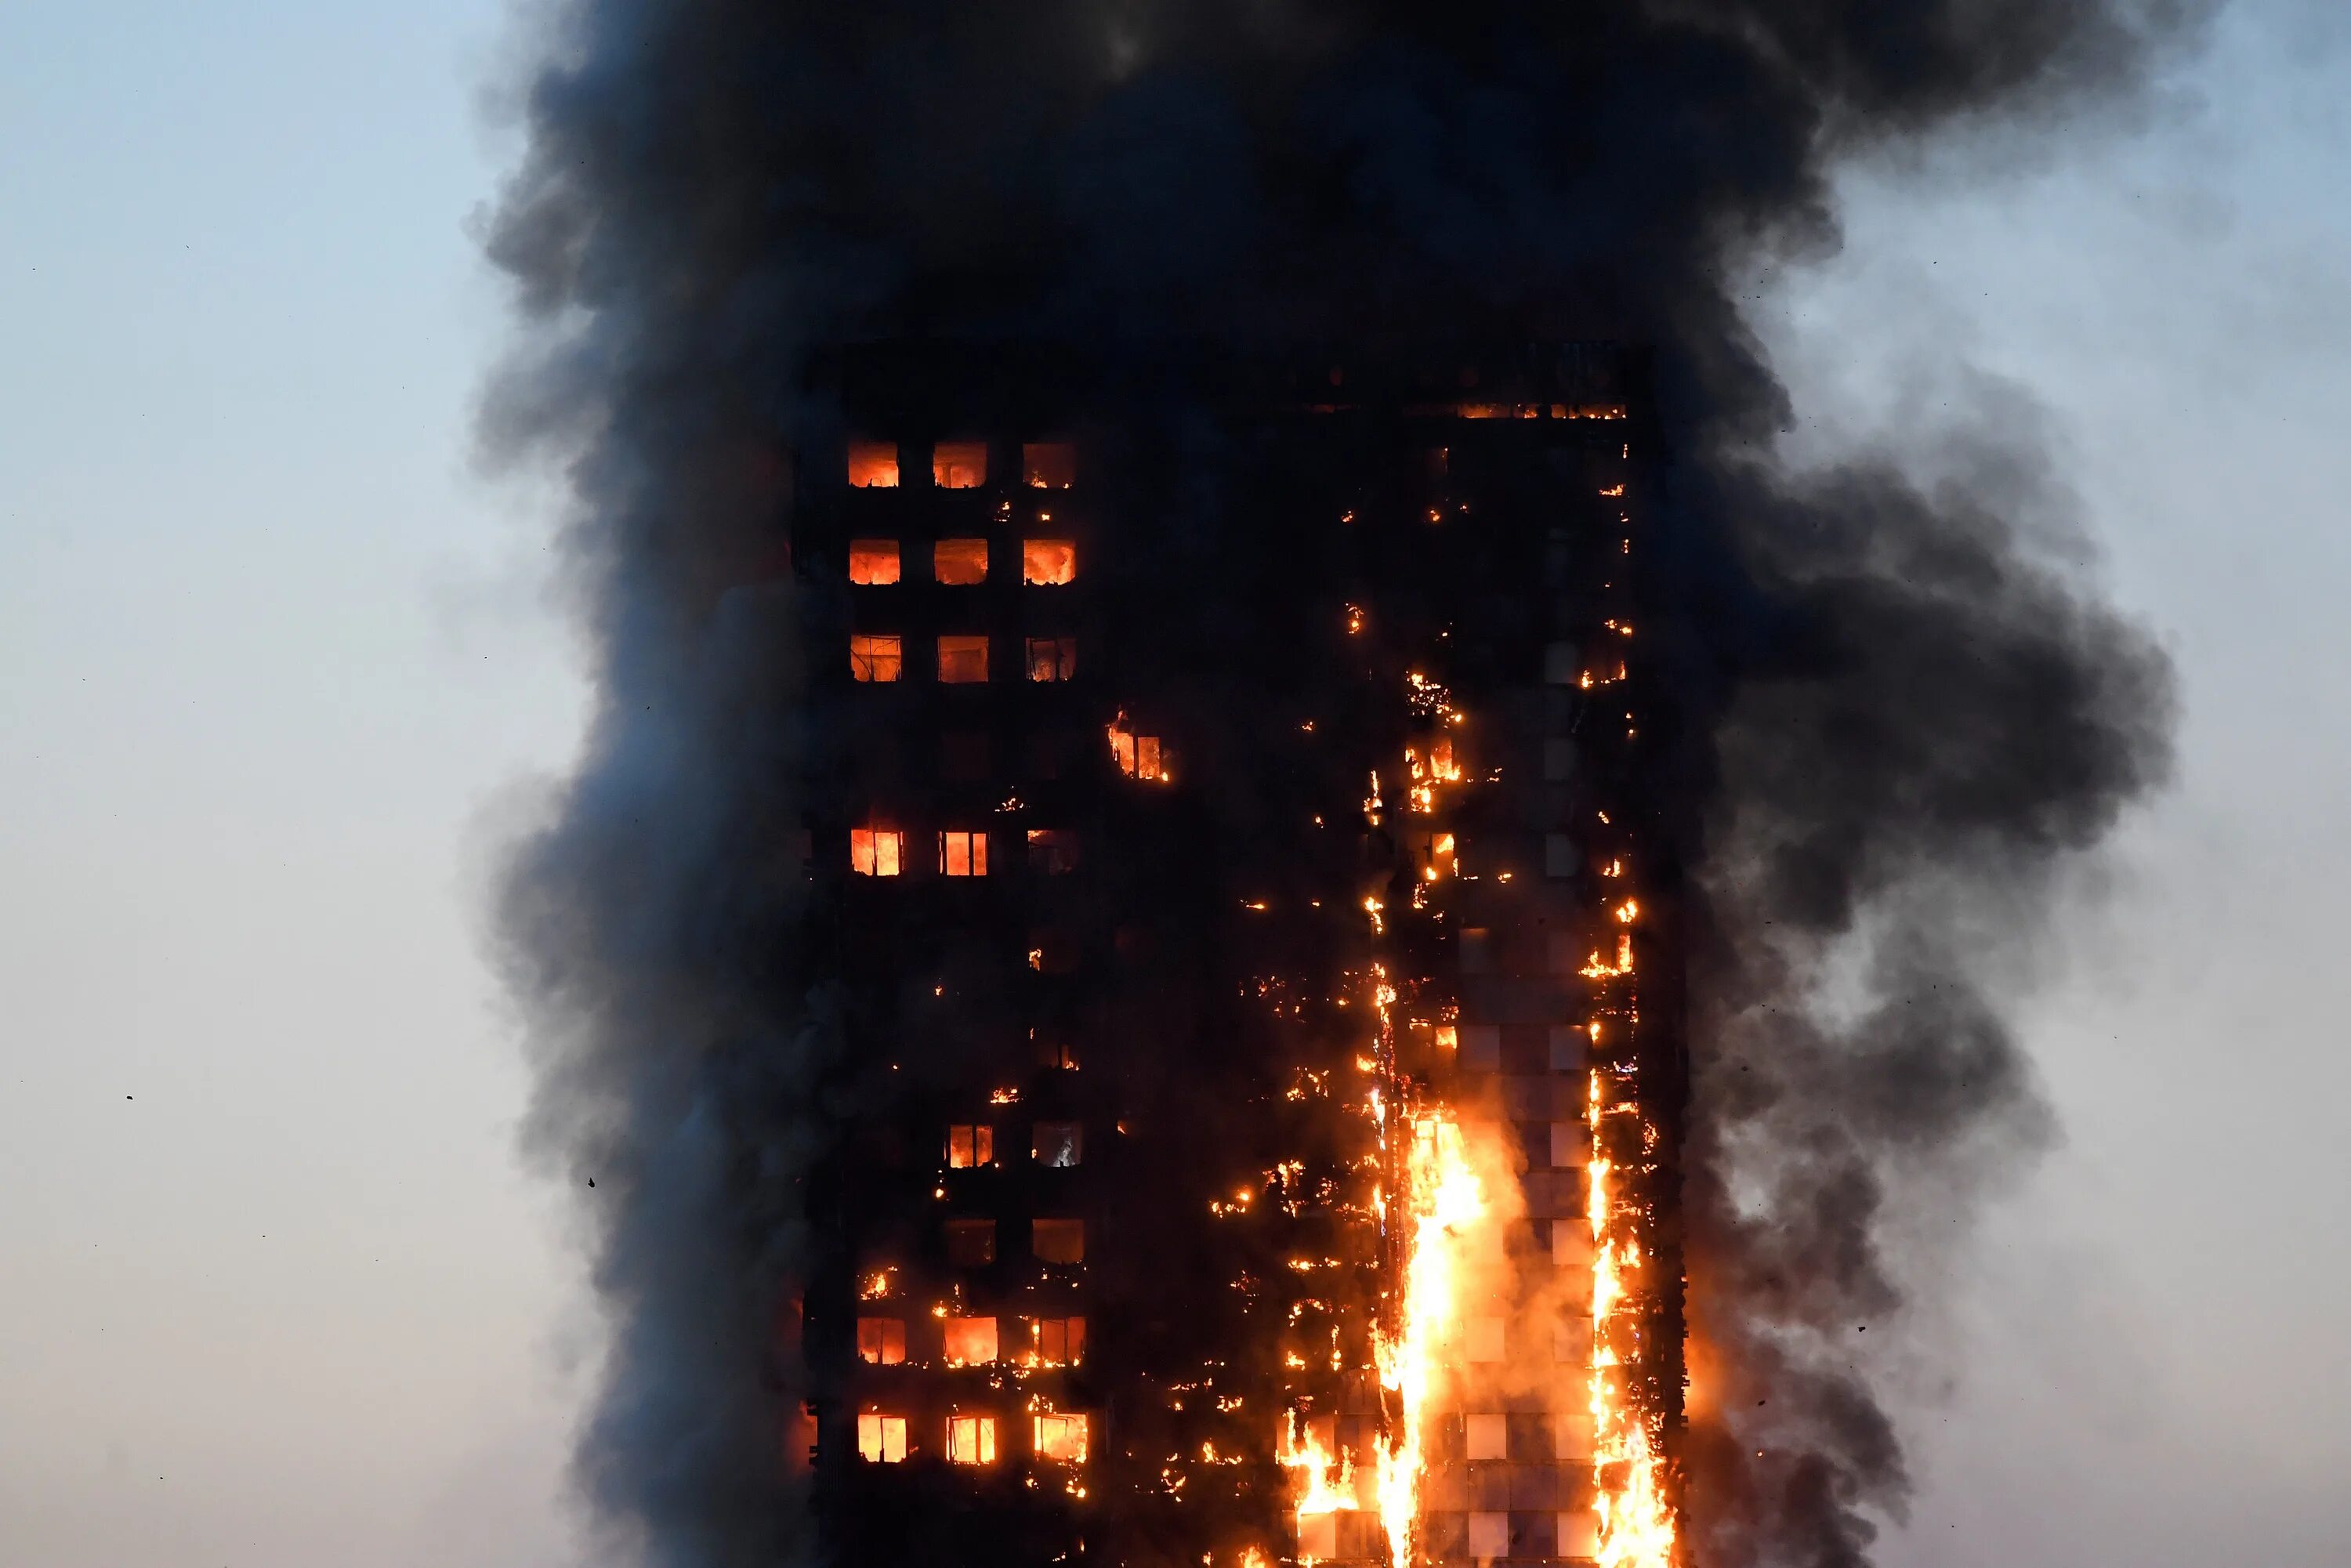 Пожар в здании Grenfell Tower в Лондоне. Гренфелл Тауэр пожар. 2017: Пожар в Grenfell Tower в Лондоне. Горящий многоэтажный дом. Где сгорел город